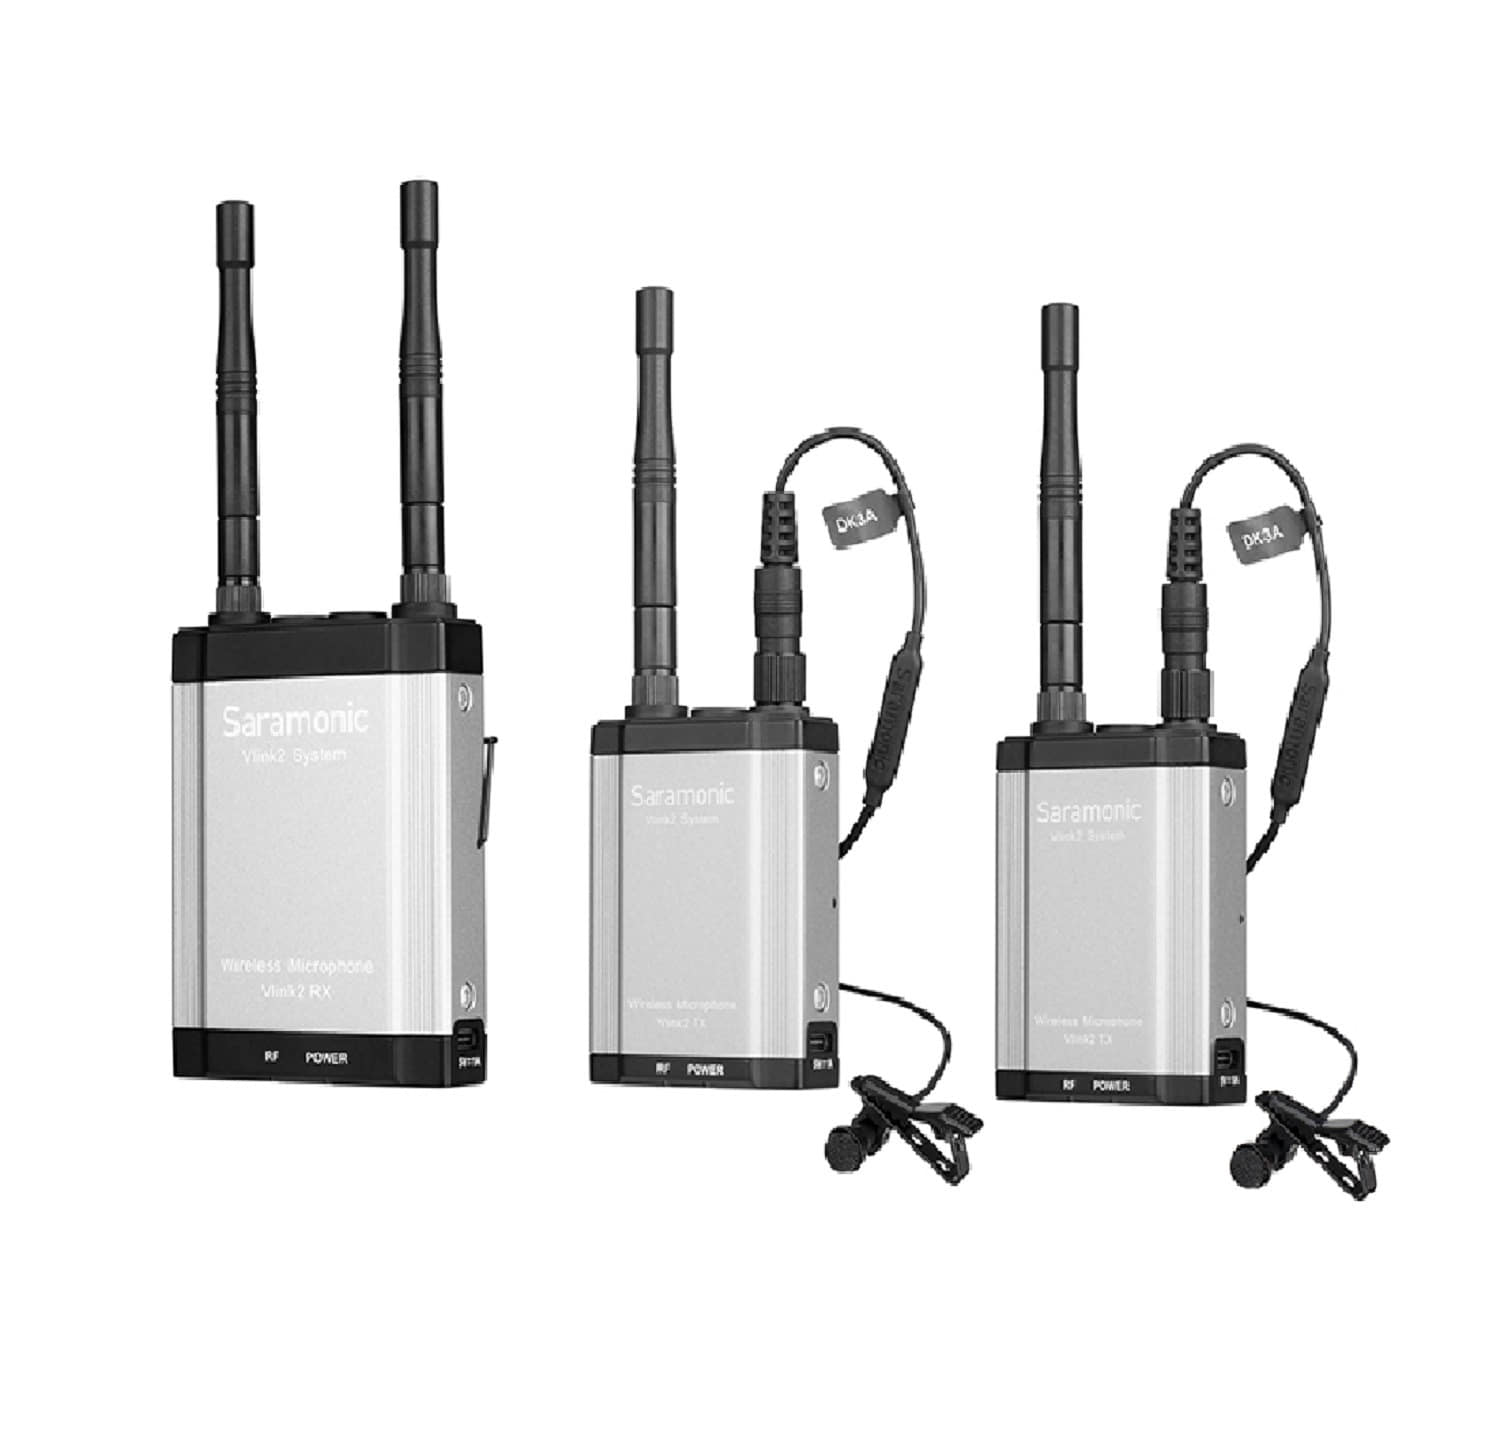 2.4 GHz Wireless Microphone System, Saramonic Vlink2 Kit2 